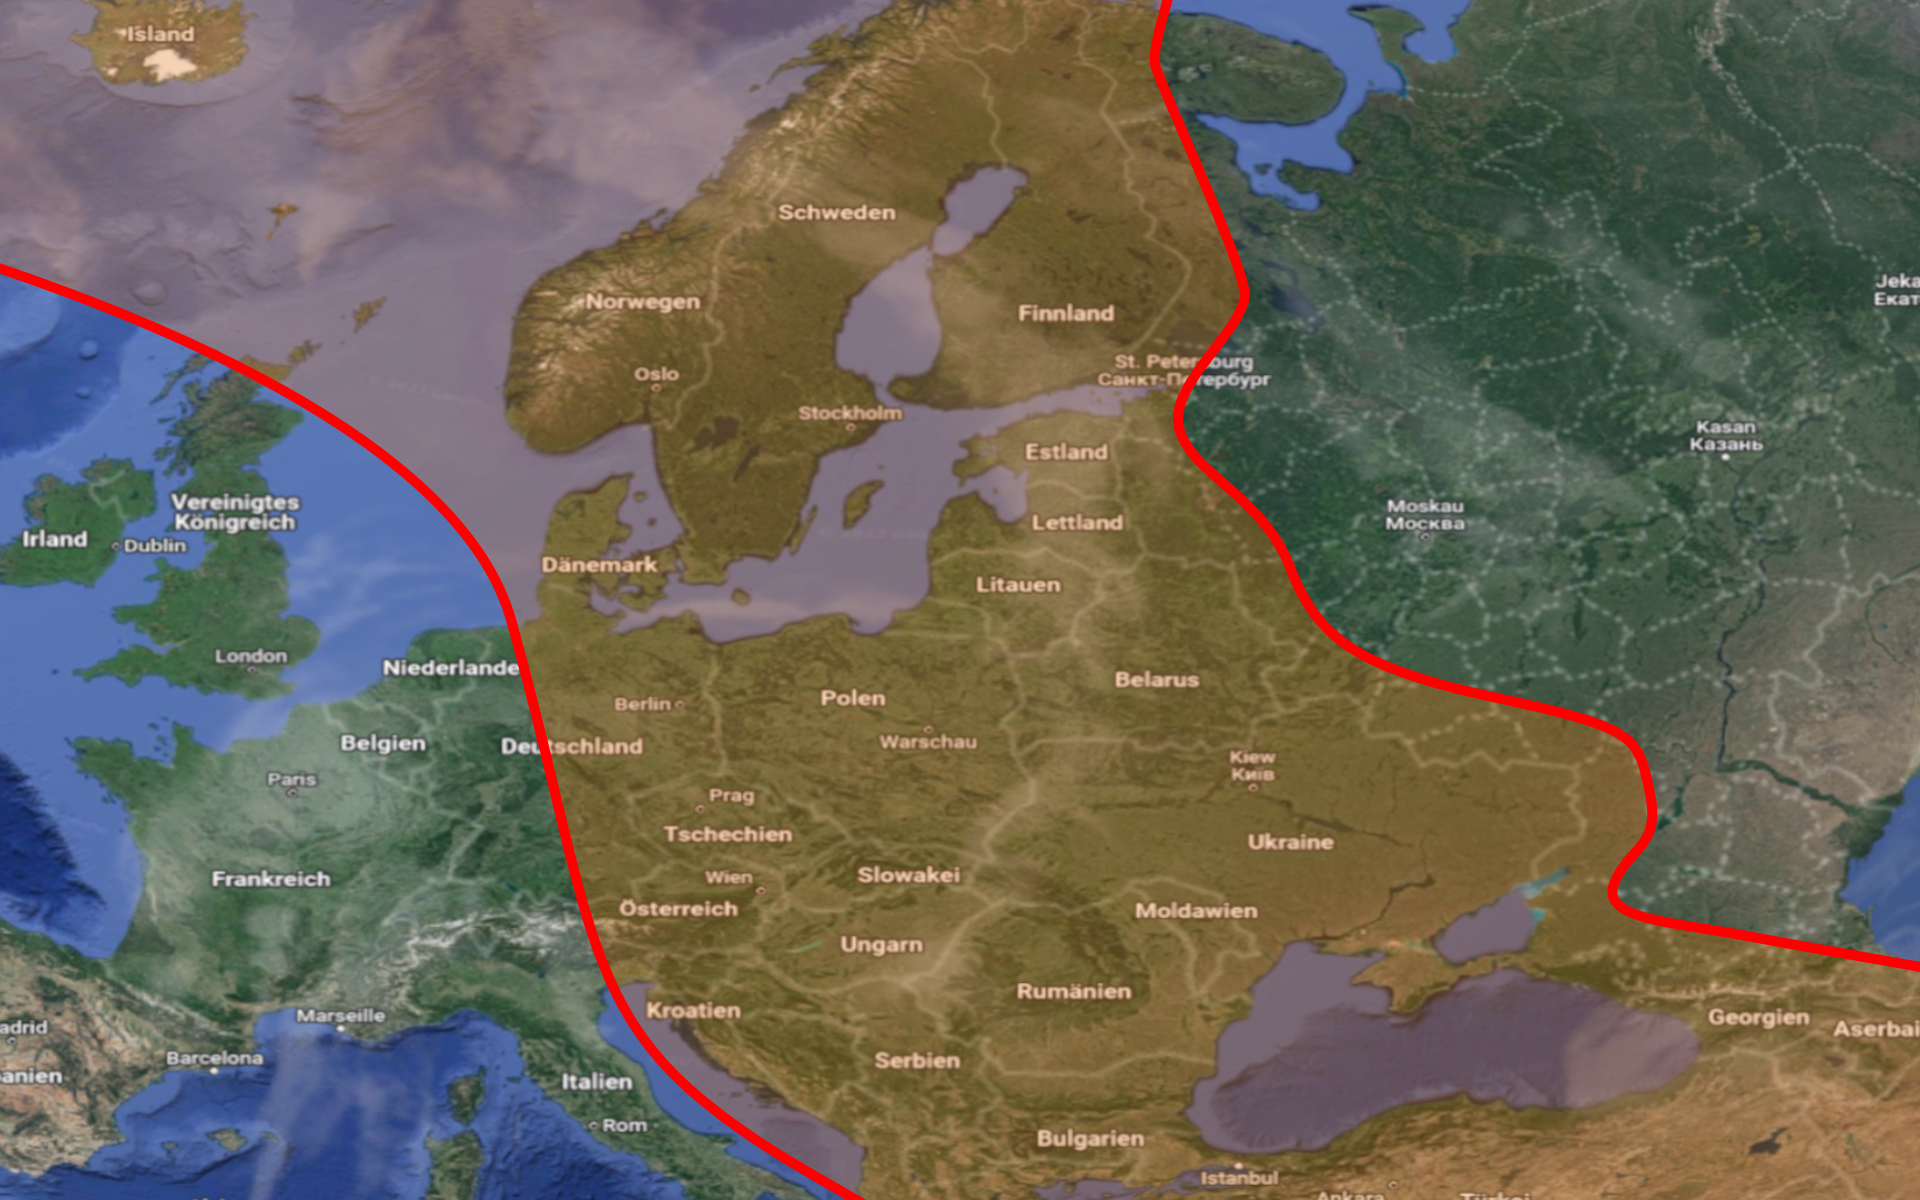 Sperrzone zwischen NATO und Russland. In dem roten Bereich dürfen keine strategischen Waffen wie Atomwaffen Mittelstreckenraketen oder Langstreckenbomber stationiert sein.